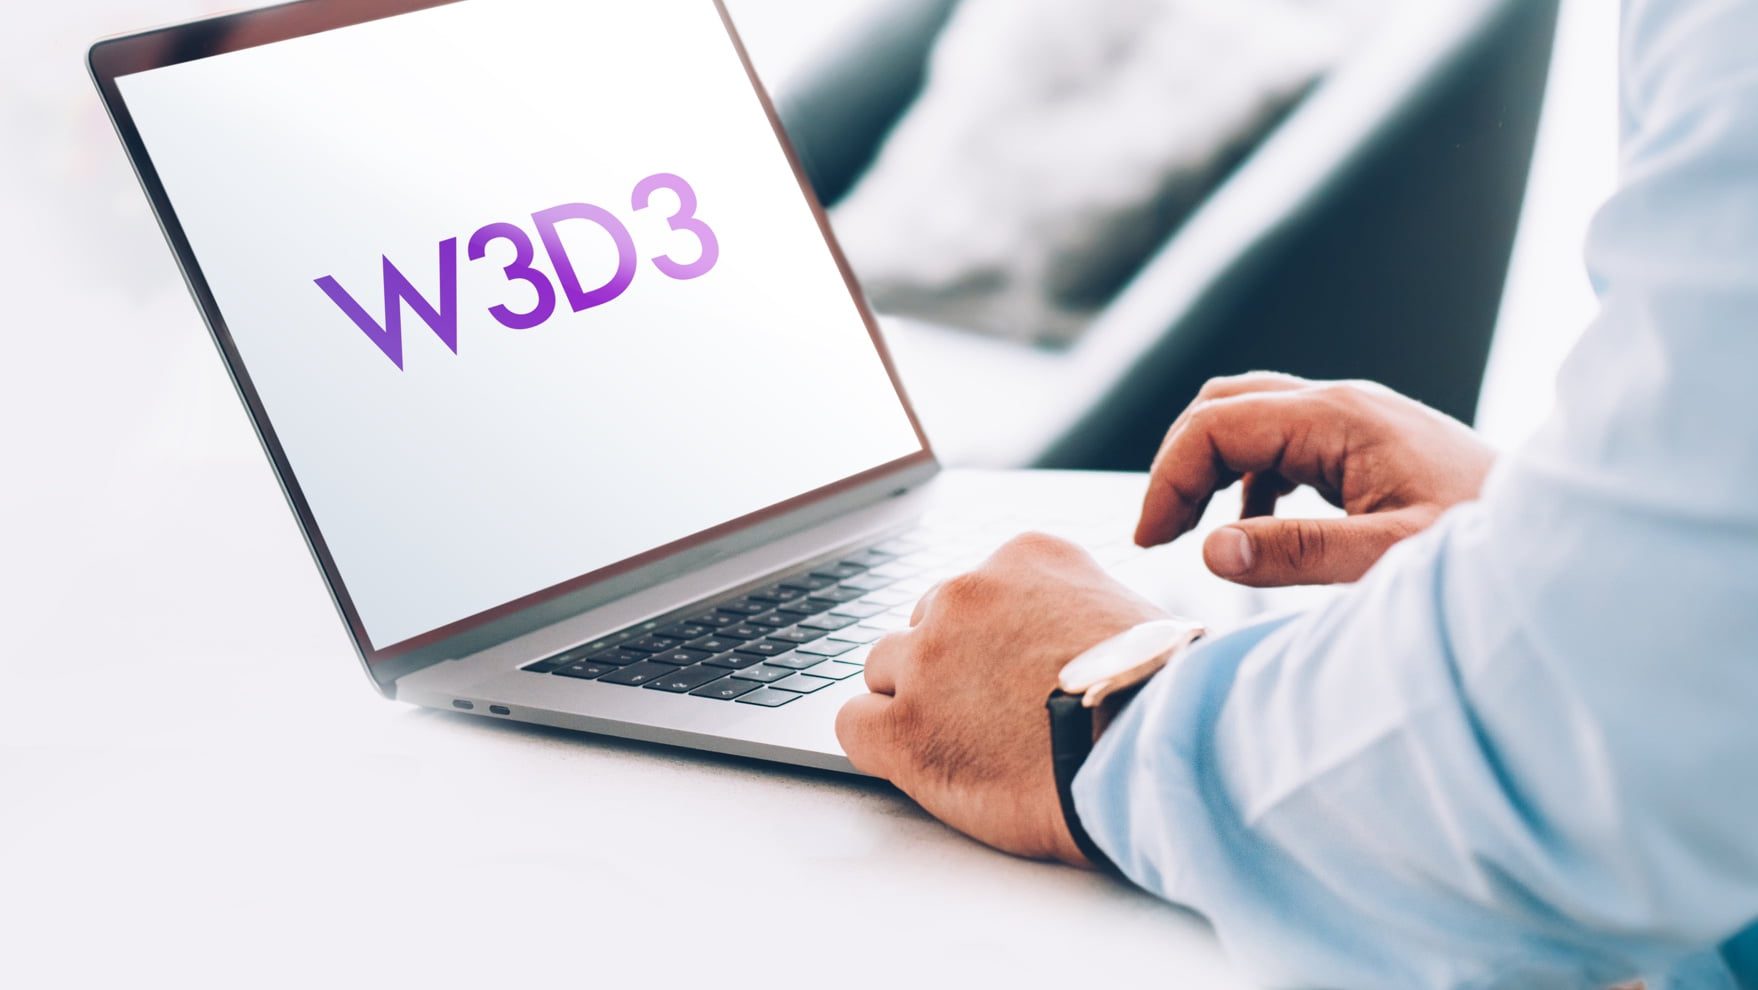 W3D3 on laptop screen